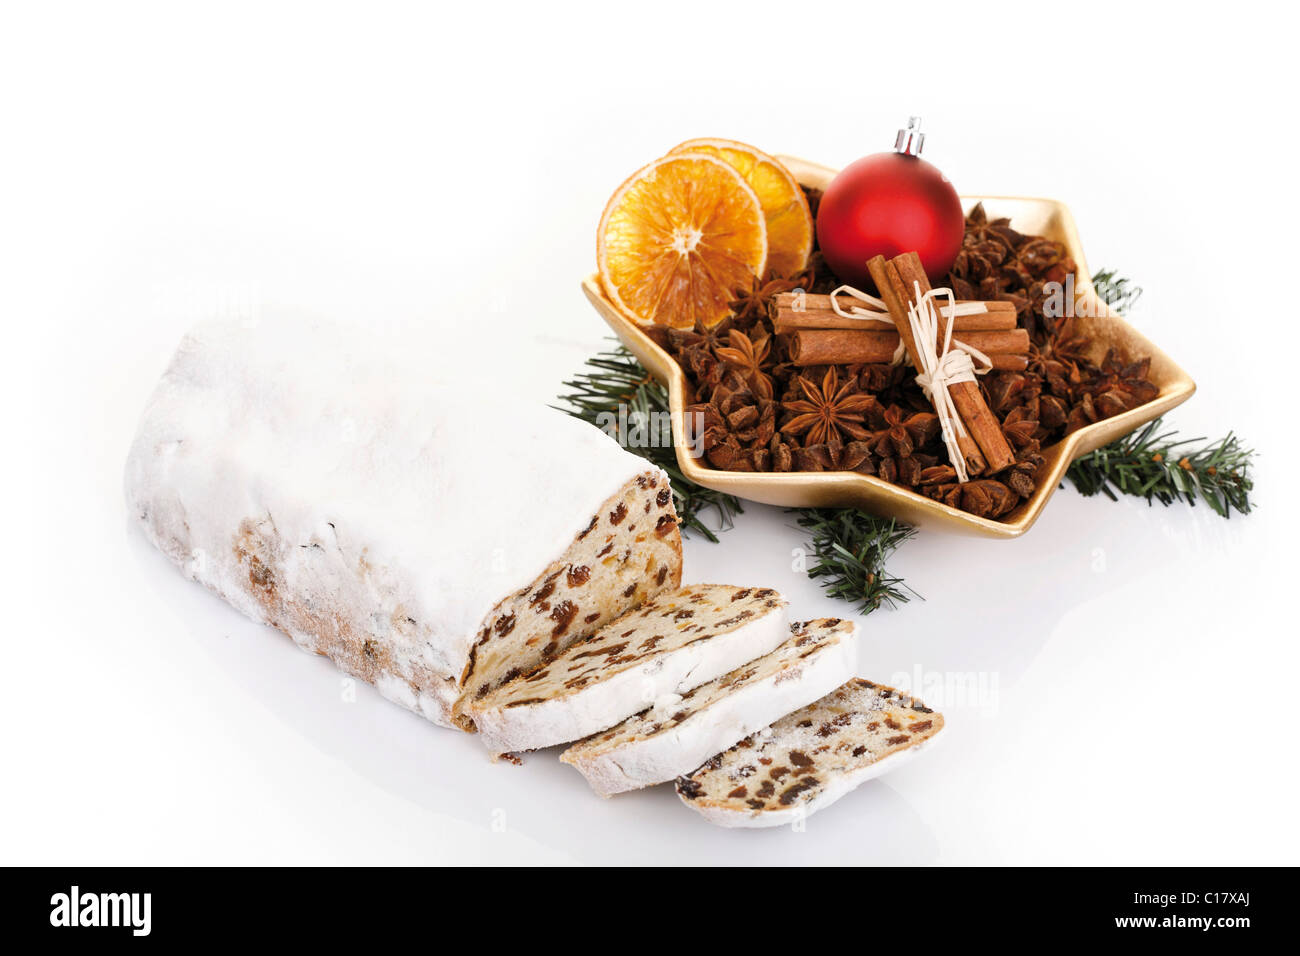 Mantequilla de almendras stollen de Navidad con un plato de Navidad con anís estrella, canela, un árbol de Navidad y adornos de secado Foto de stock